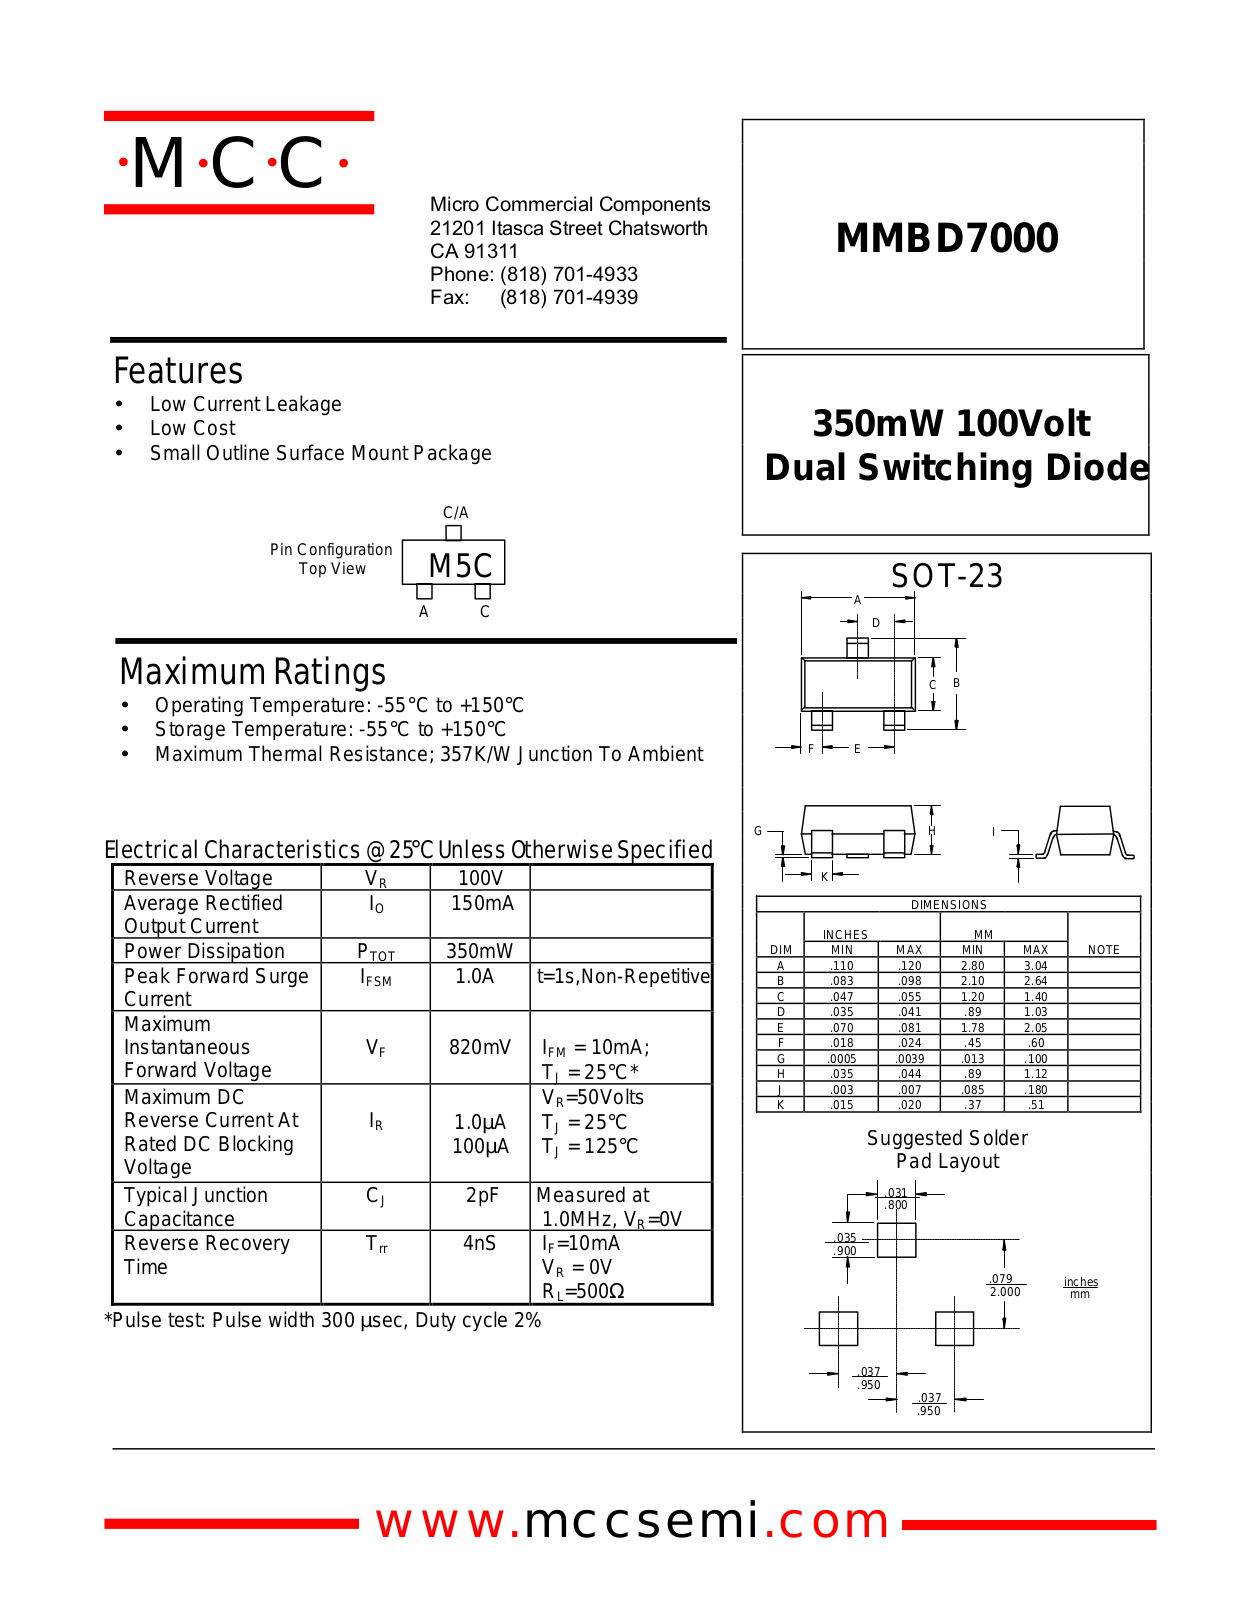 MCC MMBD7000 Datasheet